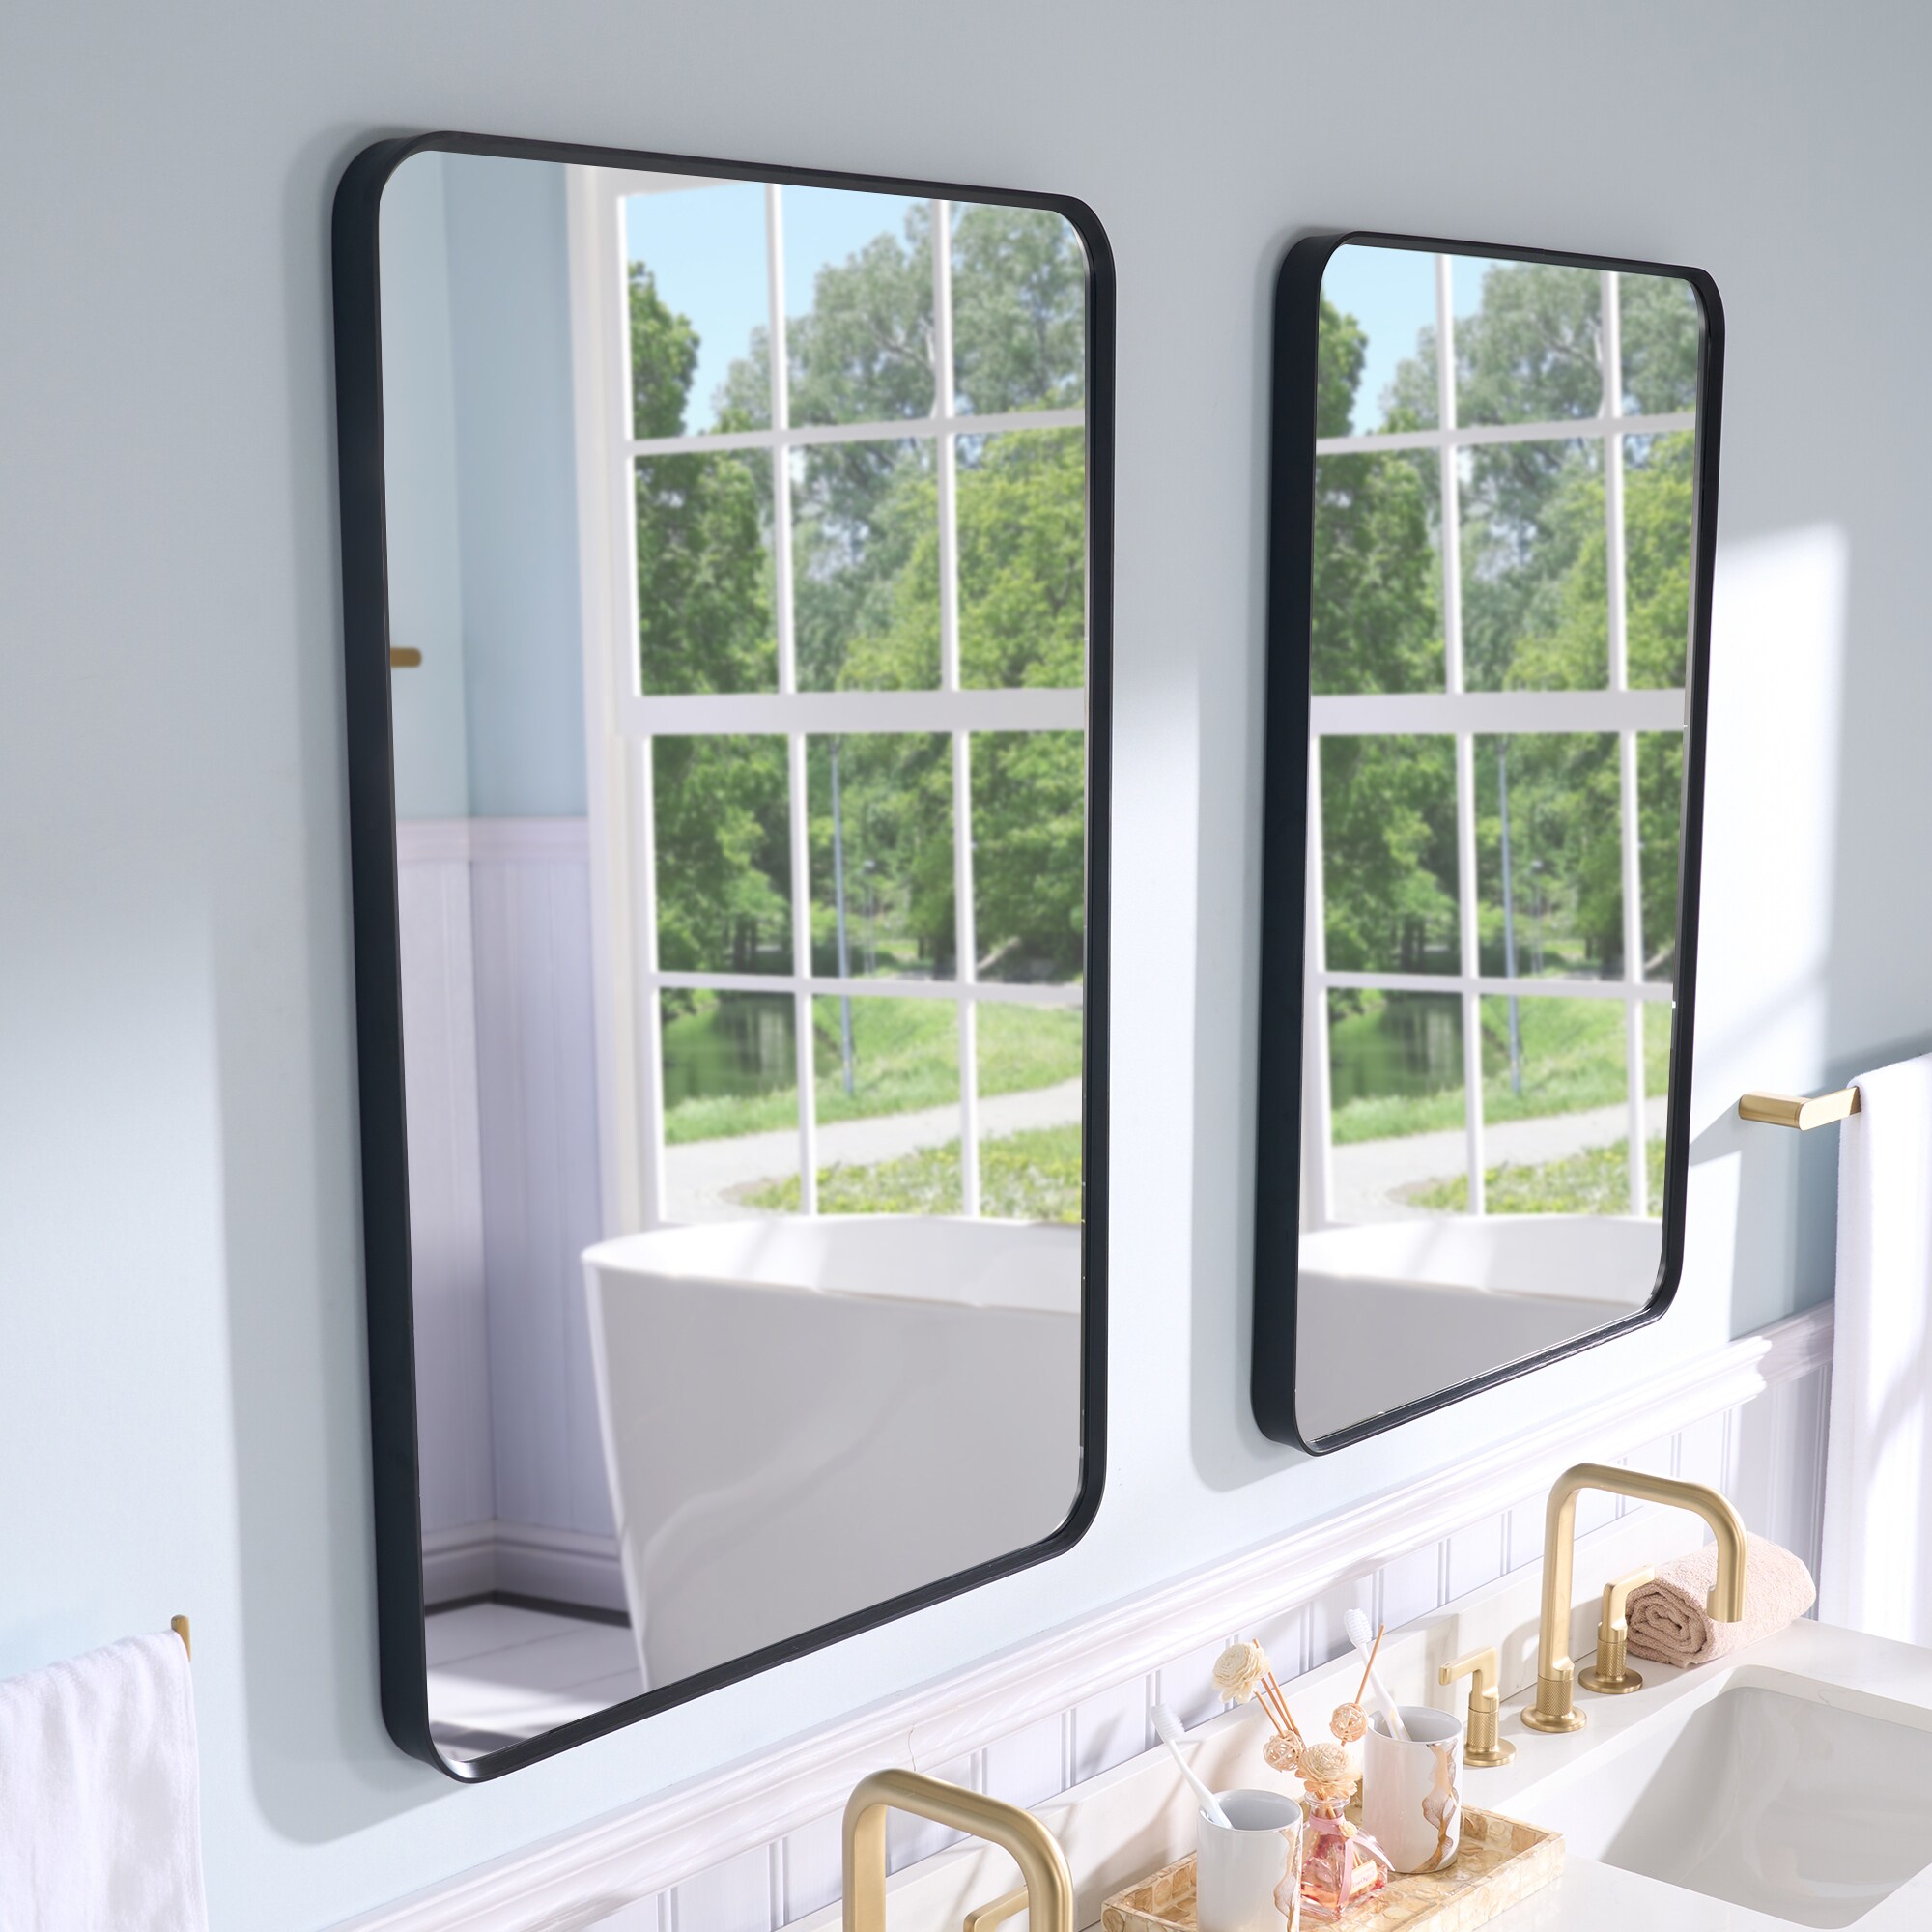 WELLFOR F1 Bathroom Mirror 24-in x 36-in Black Framed Bathroom Vanity Mirror | YAH-MSL24